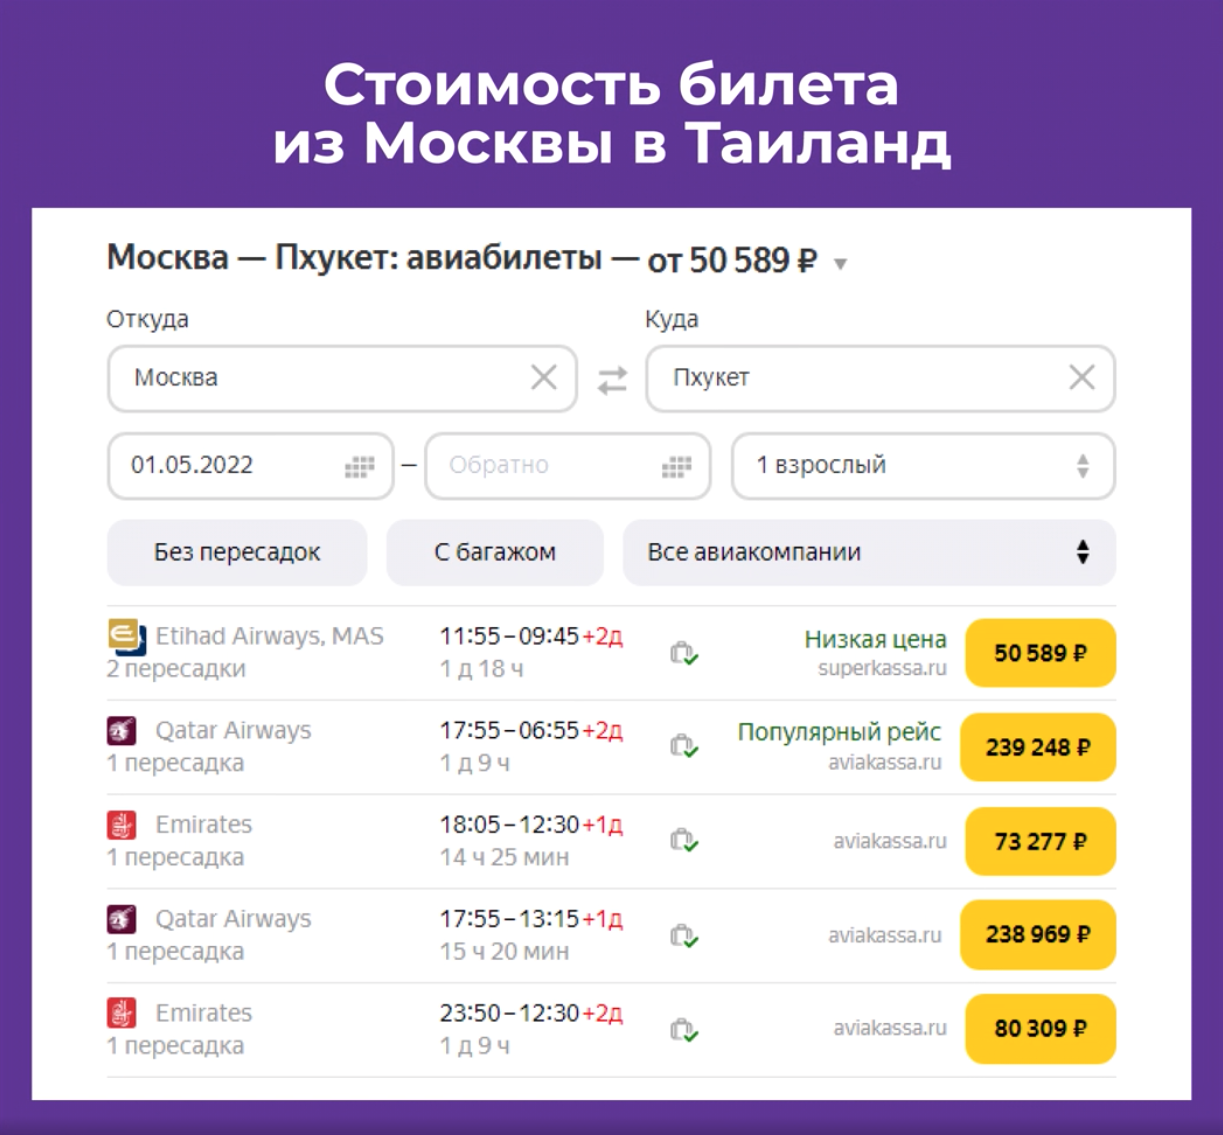 Стоимость билета из Москвы в Таиланд